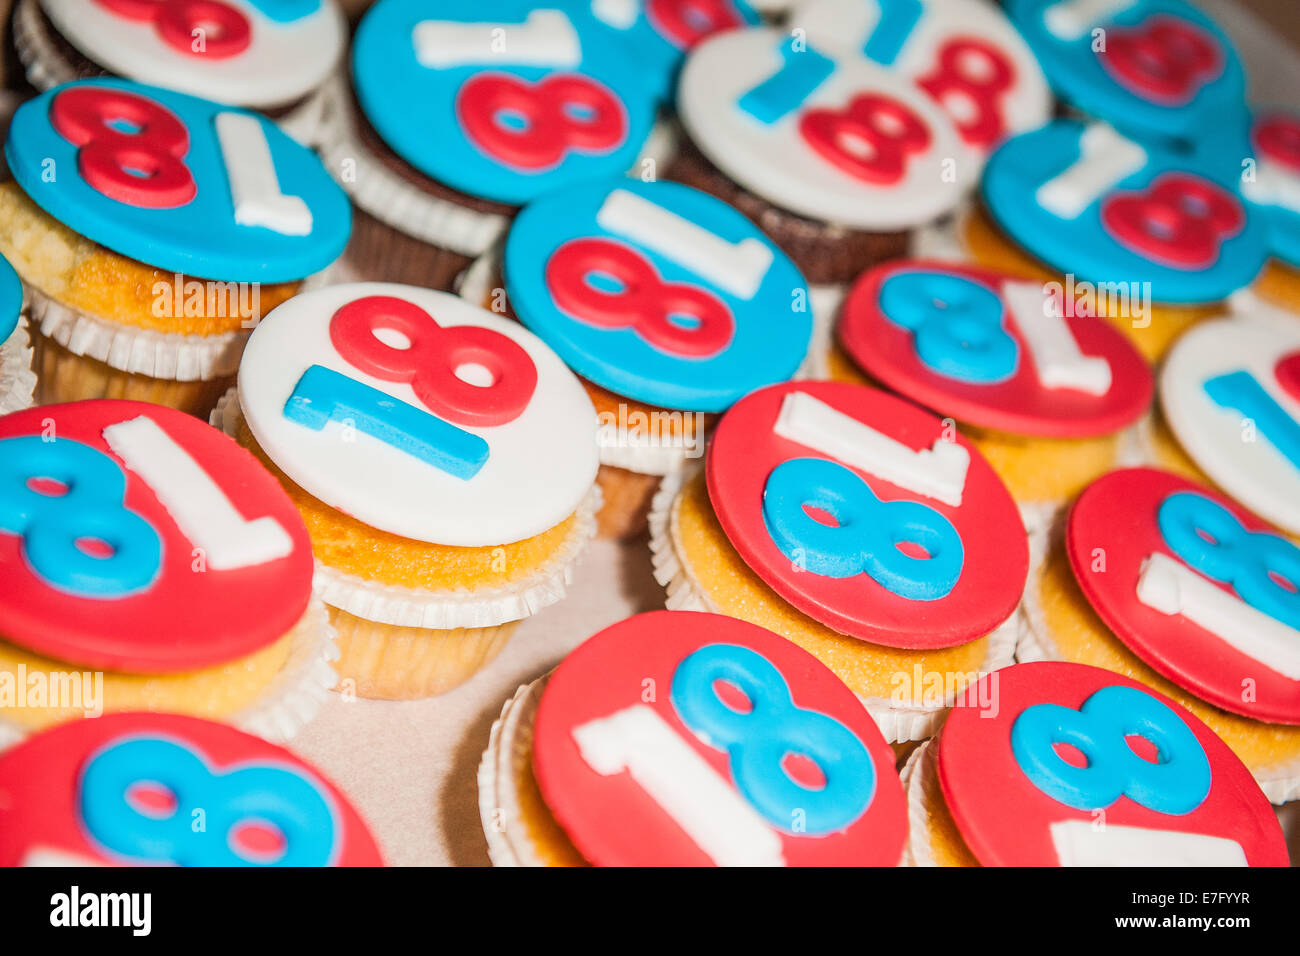 Capcake dolce e colorata personalizzata per festeggiare il compleanno di 18 anni, quando si diventa un adulto Foto Stock